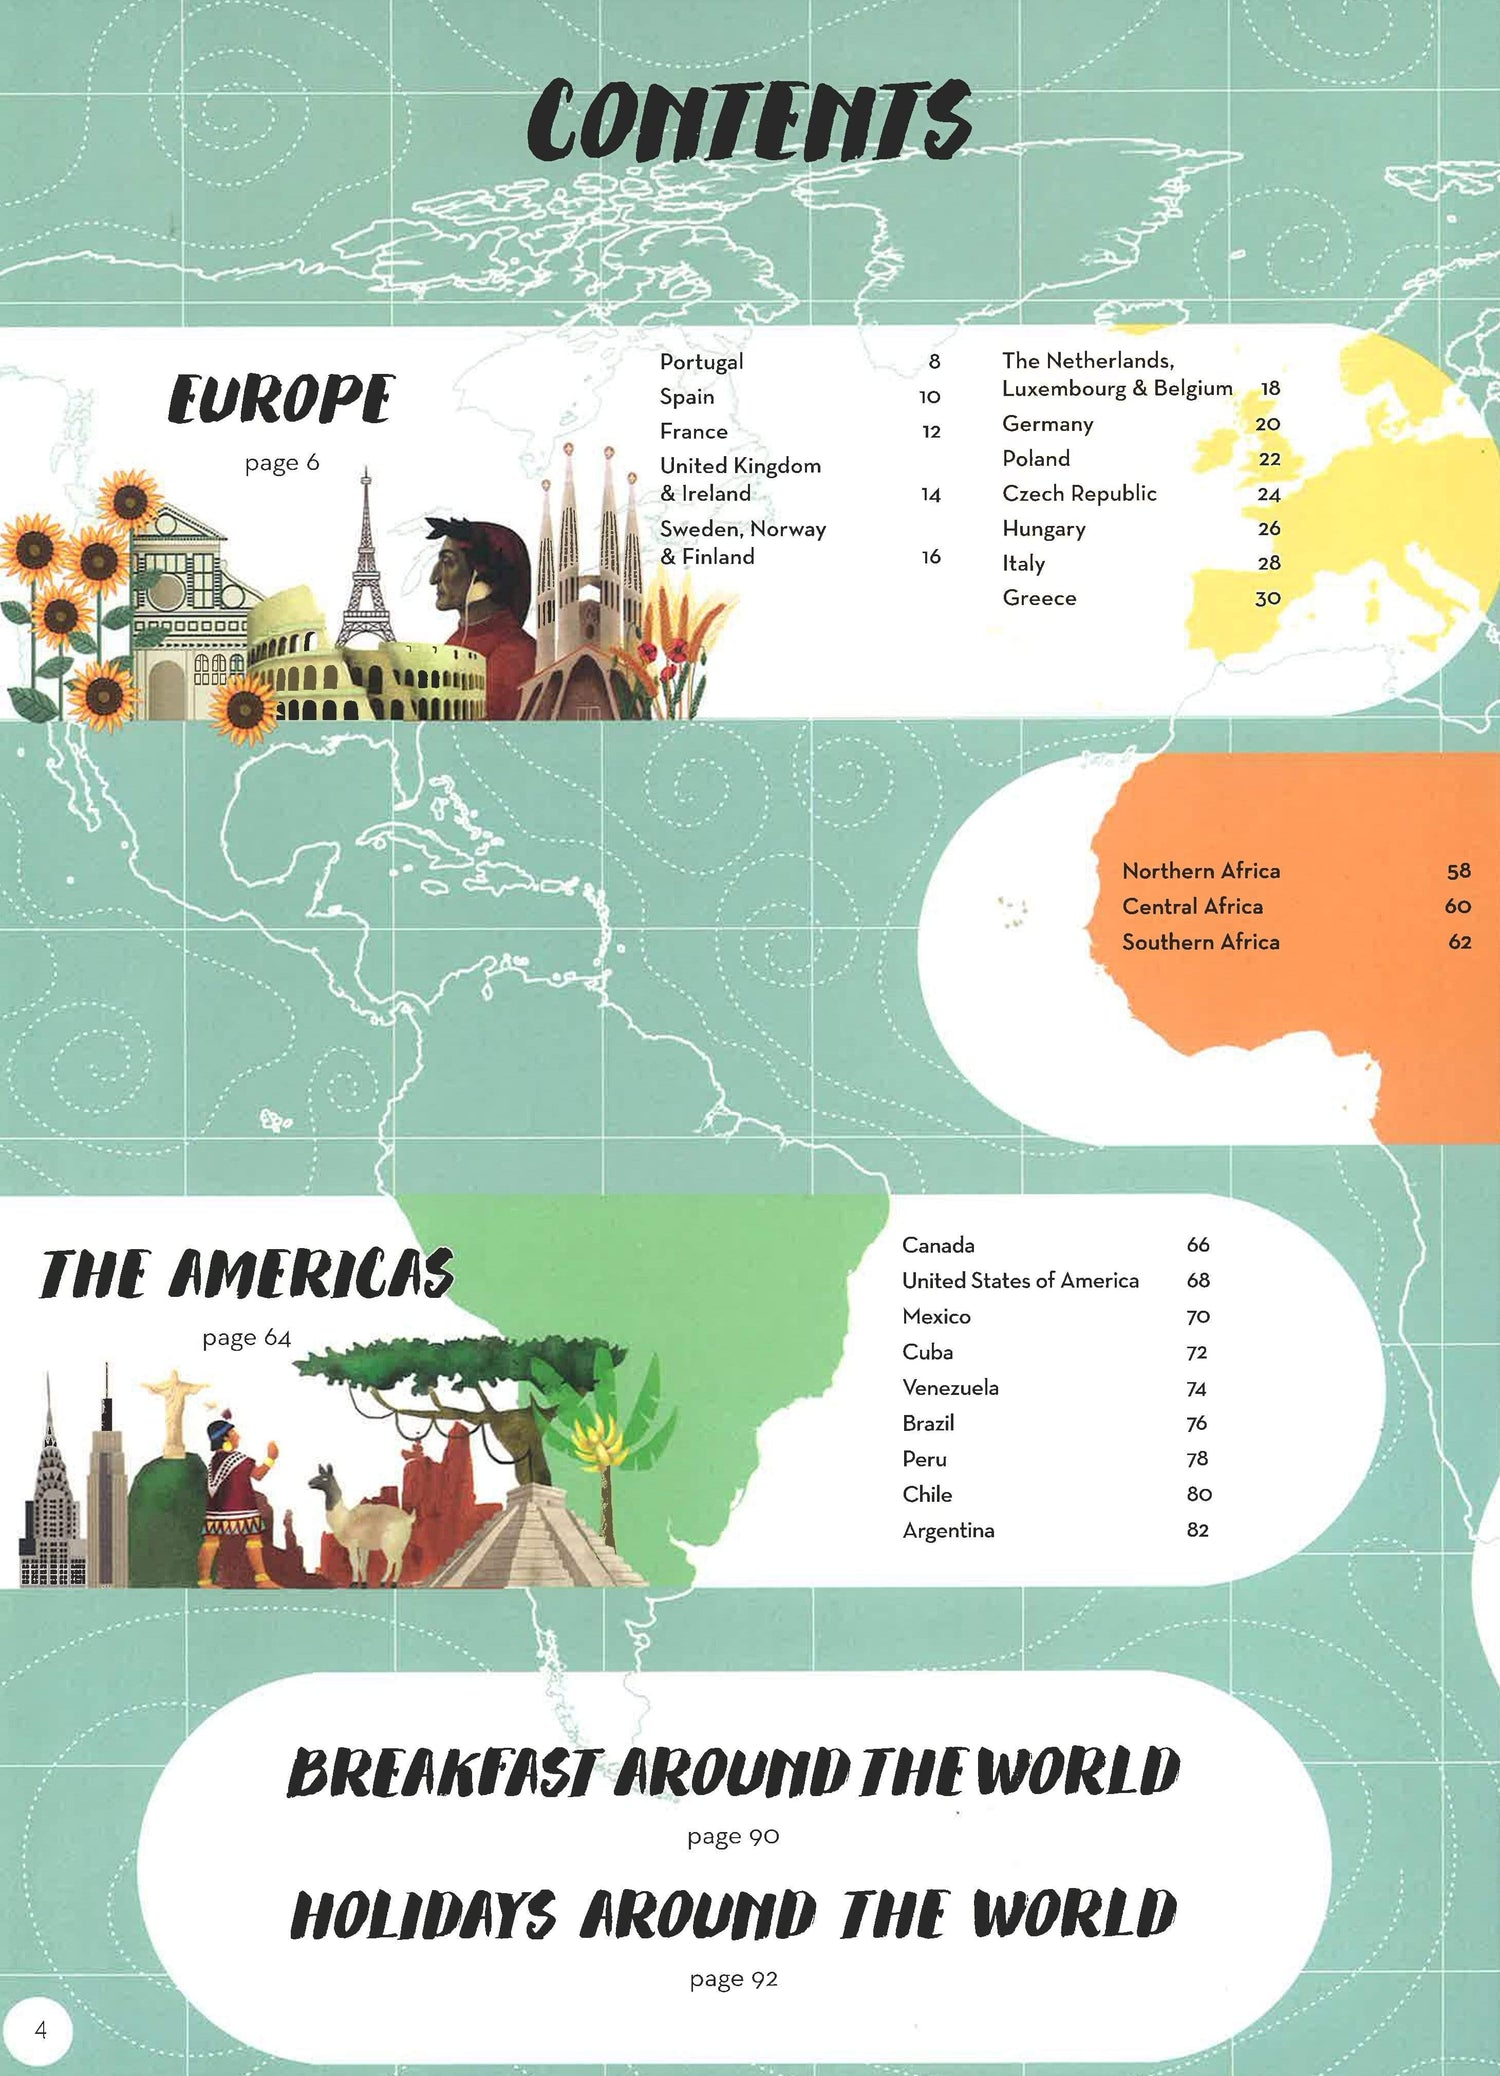 Atlas Of Food